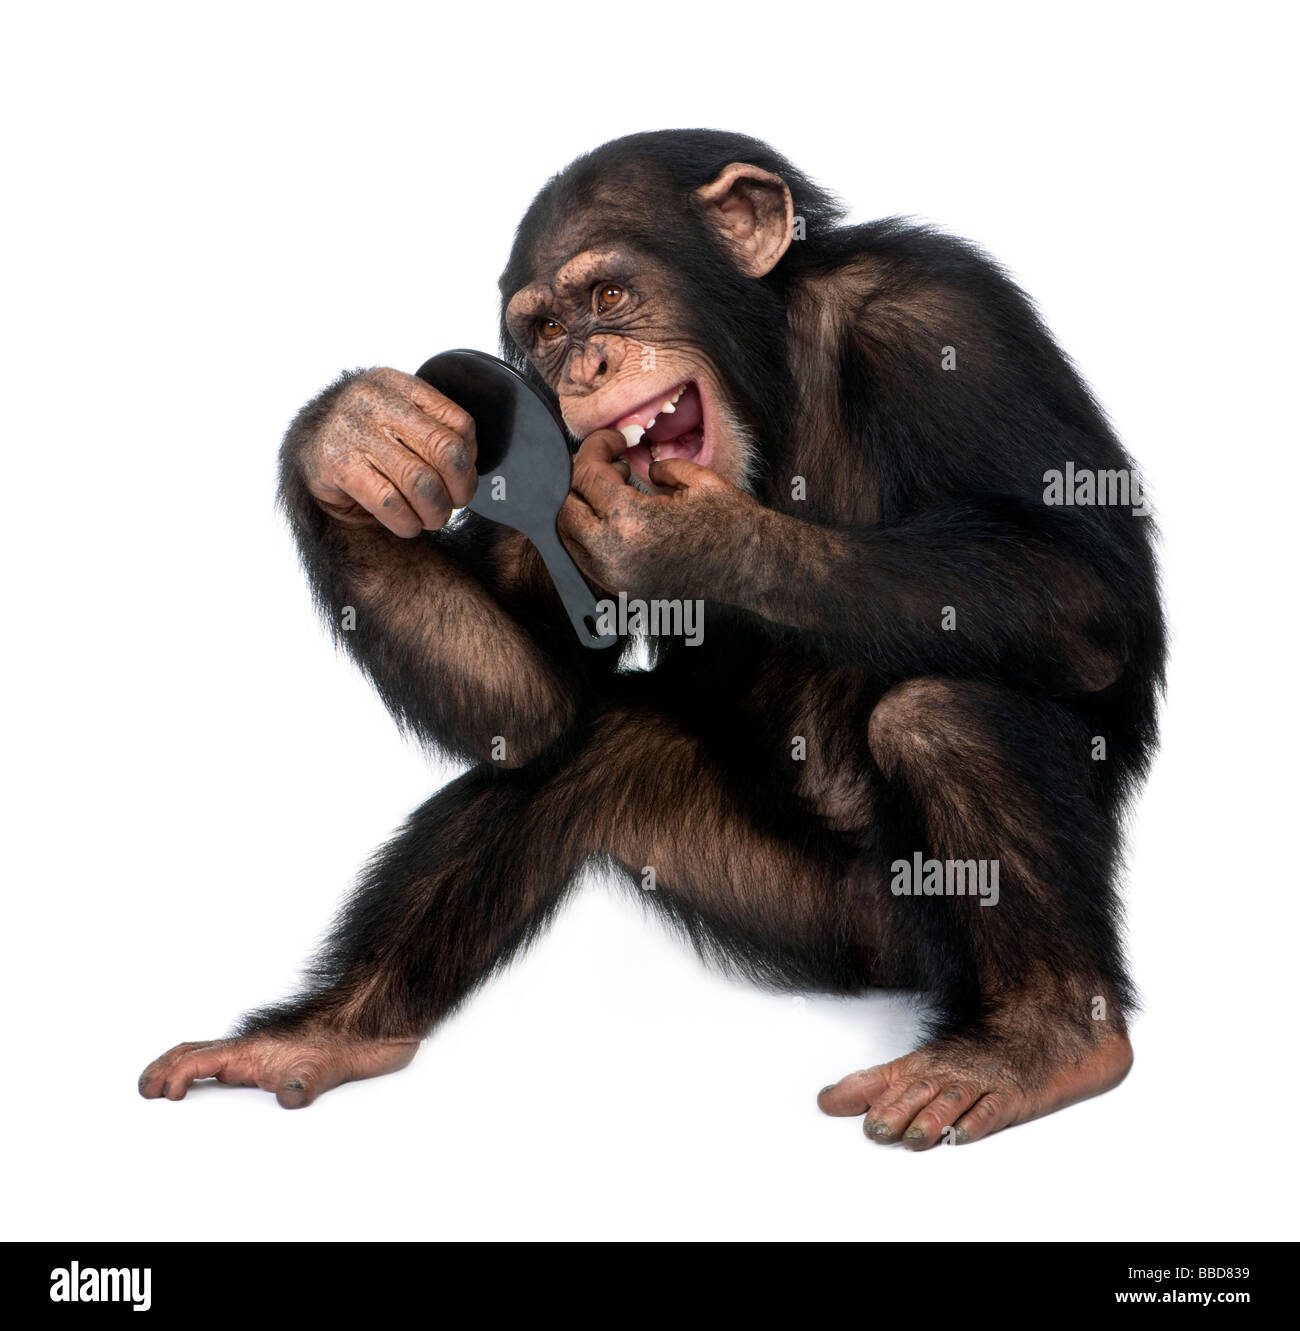 Jeune chimpanzé regarde ses dents dans un miroir en face d'un fond blanc Banque D'Images